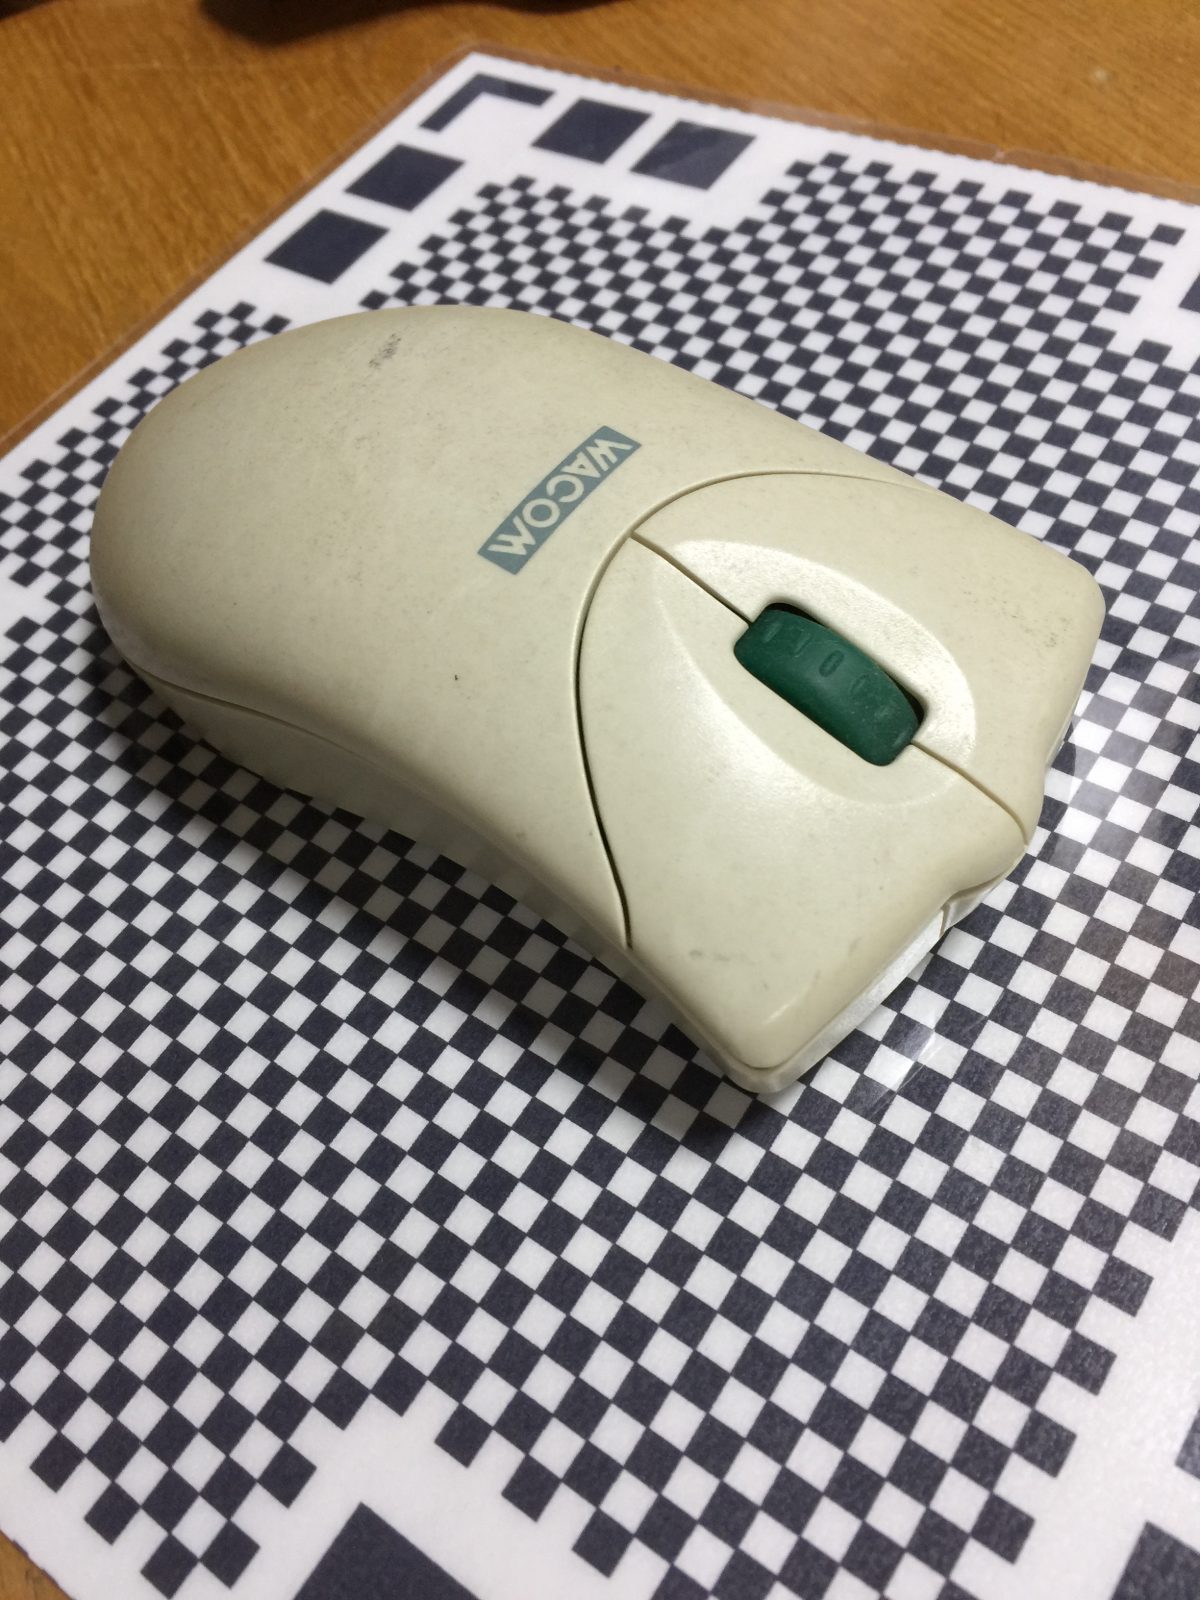 ワコム・ペンタブレットに付属のマウスを分解する – ID1384 [2019/08/19] ID1384